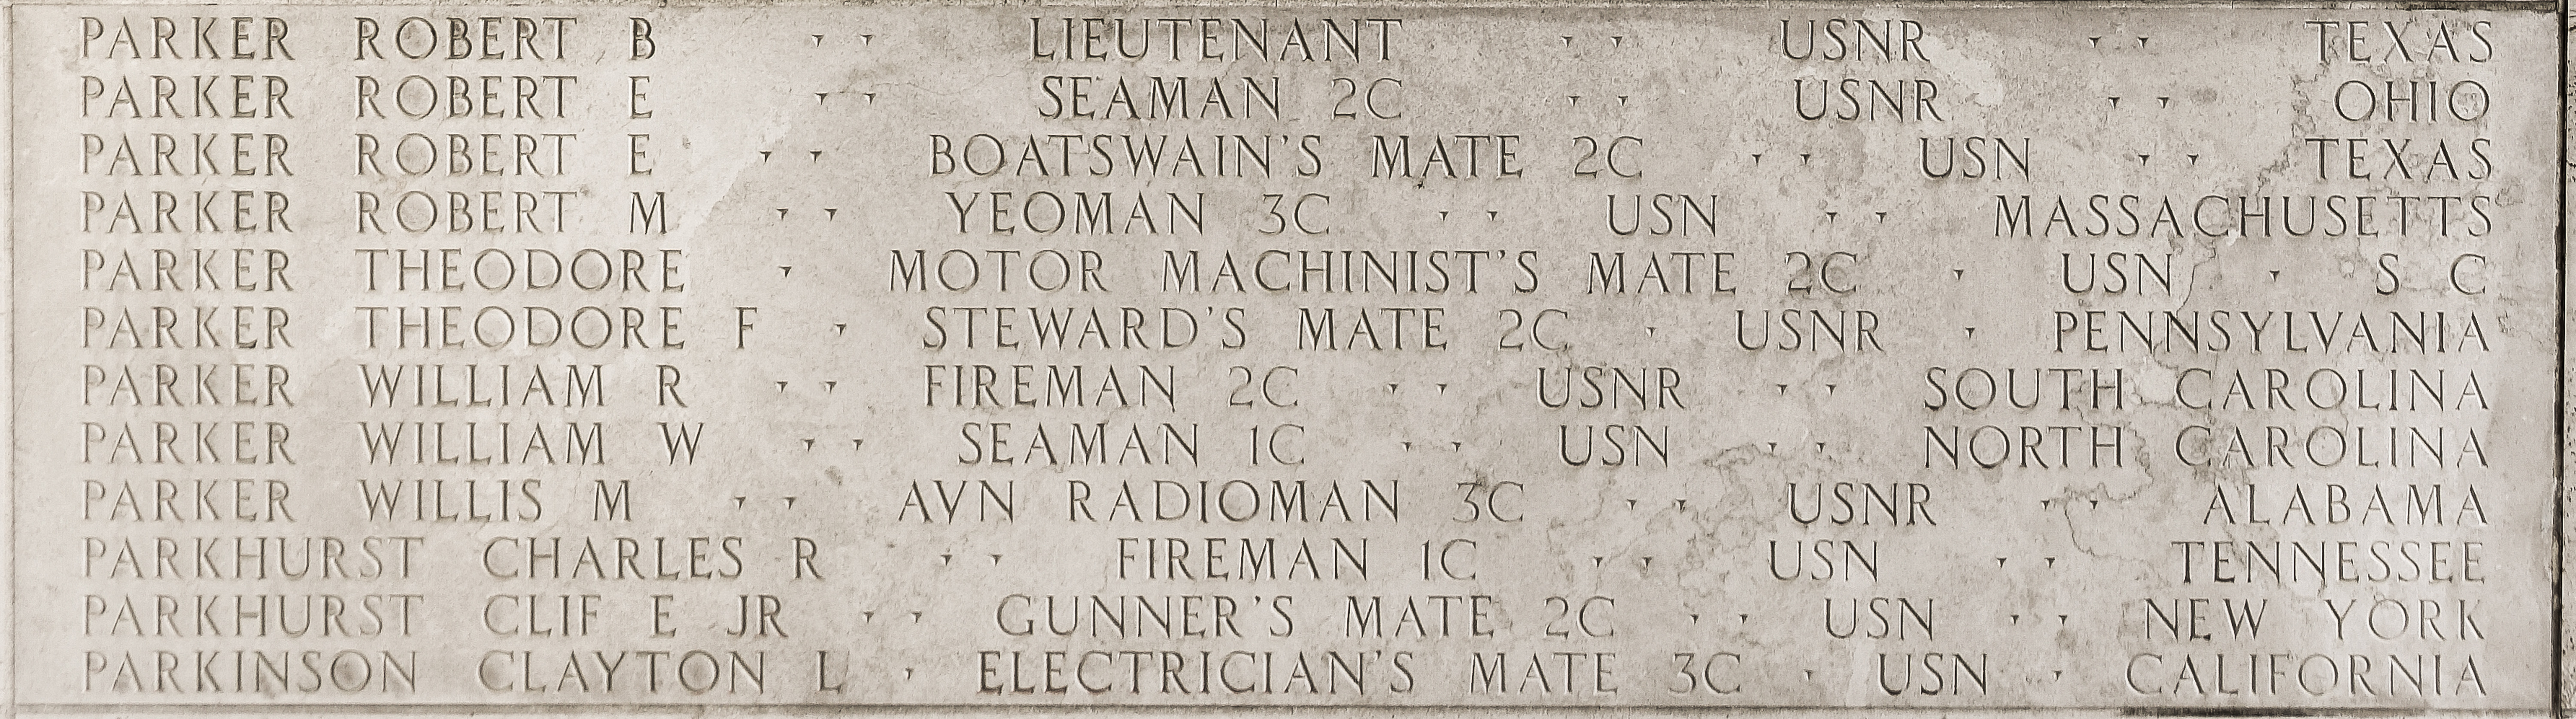 Robert E. Parker, Boatswain's Mate Second Class